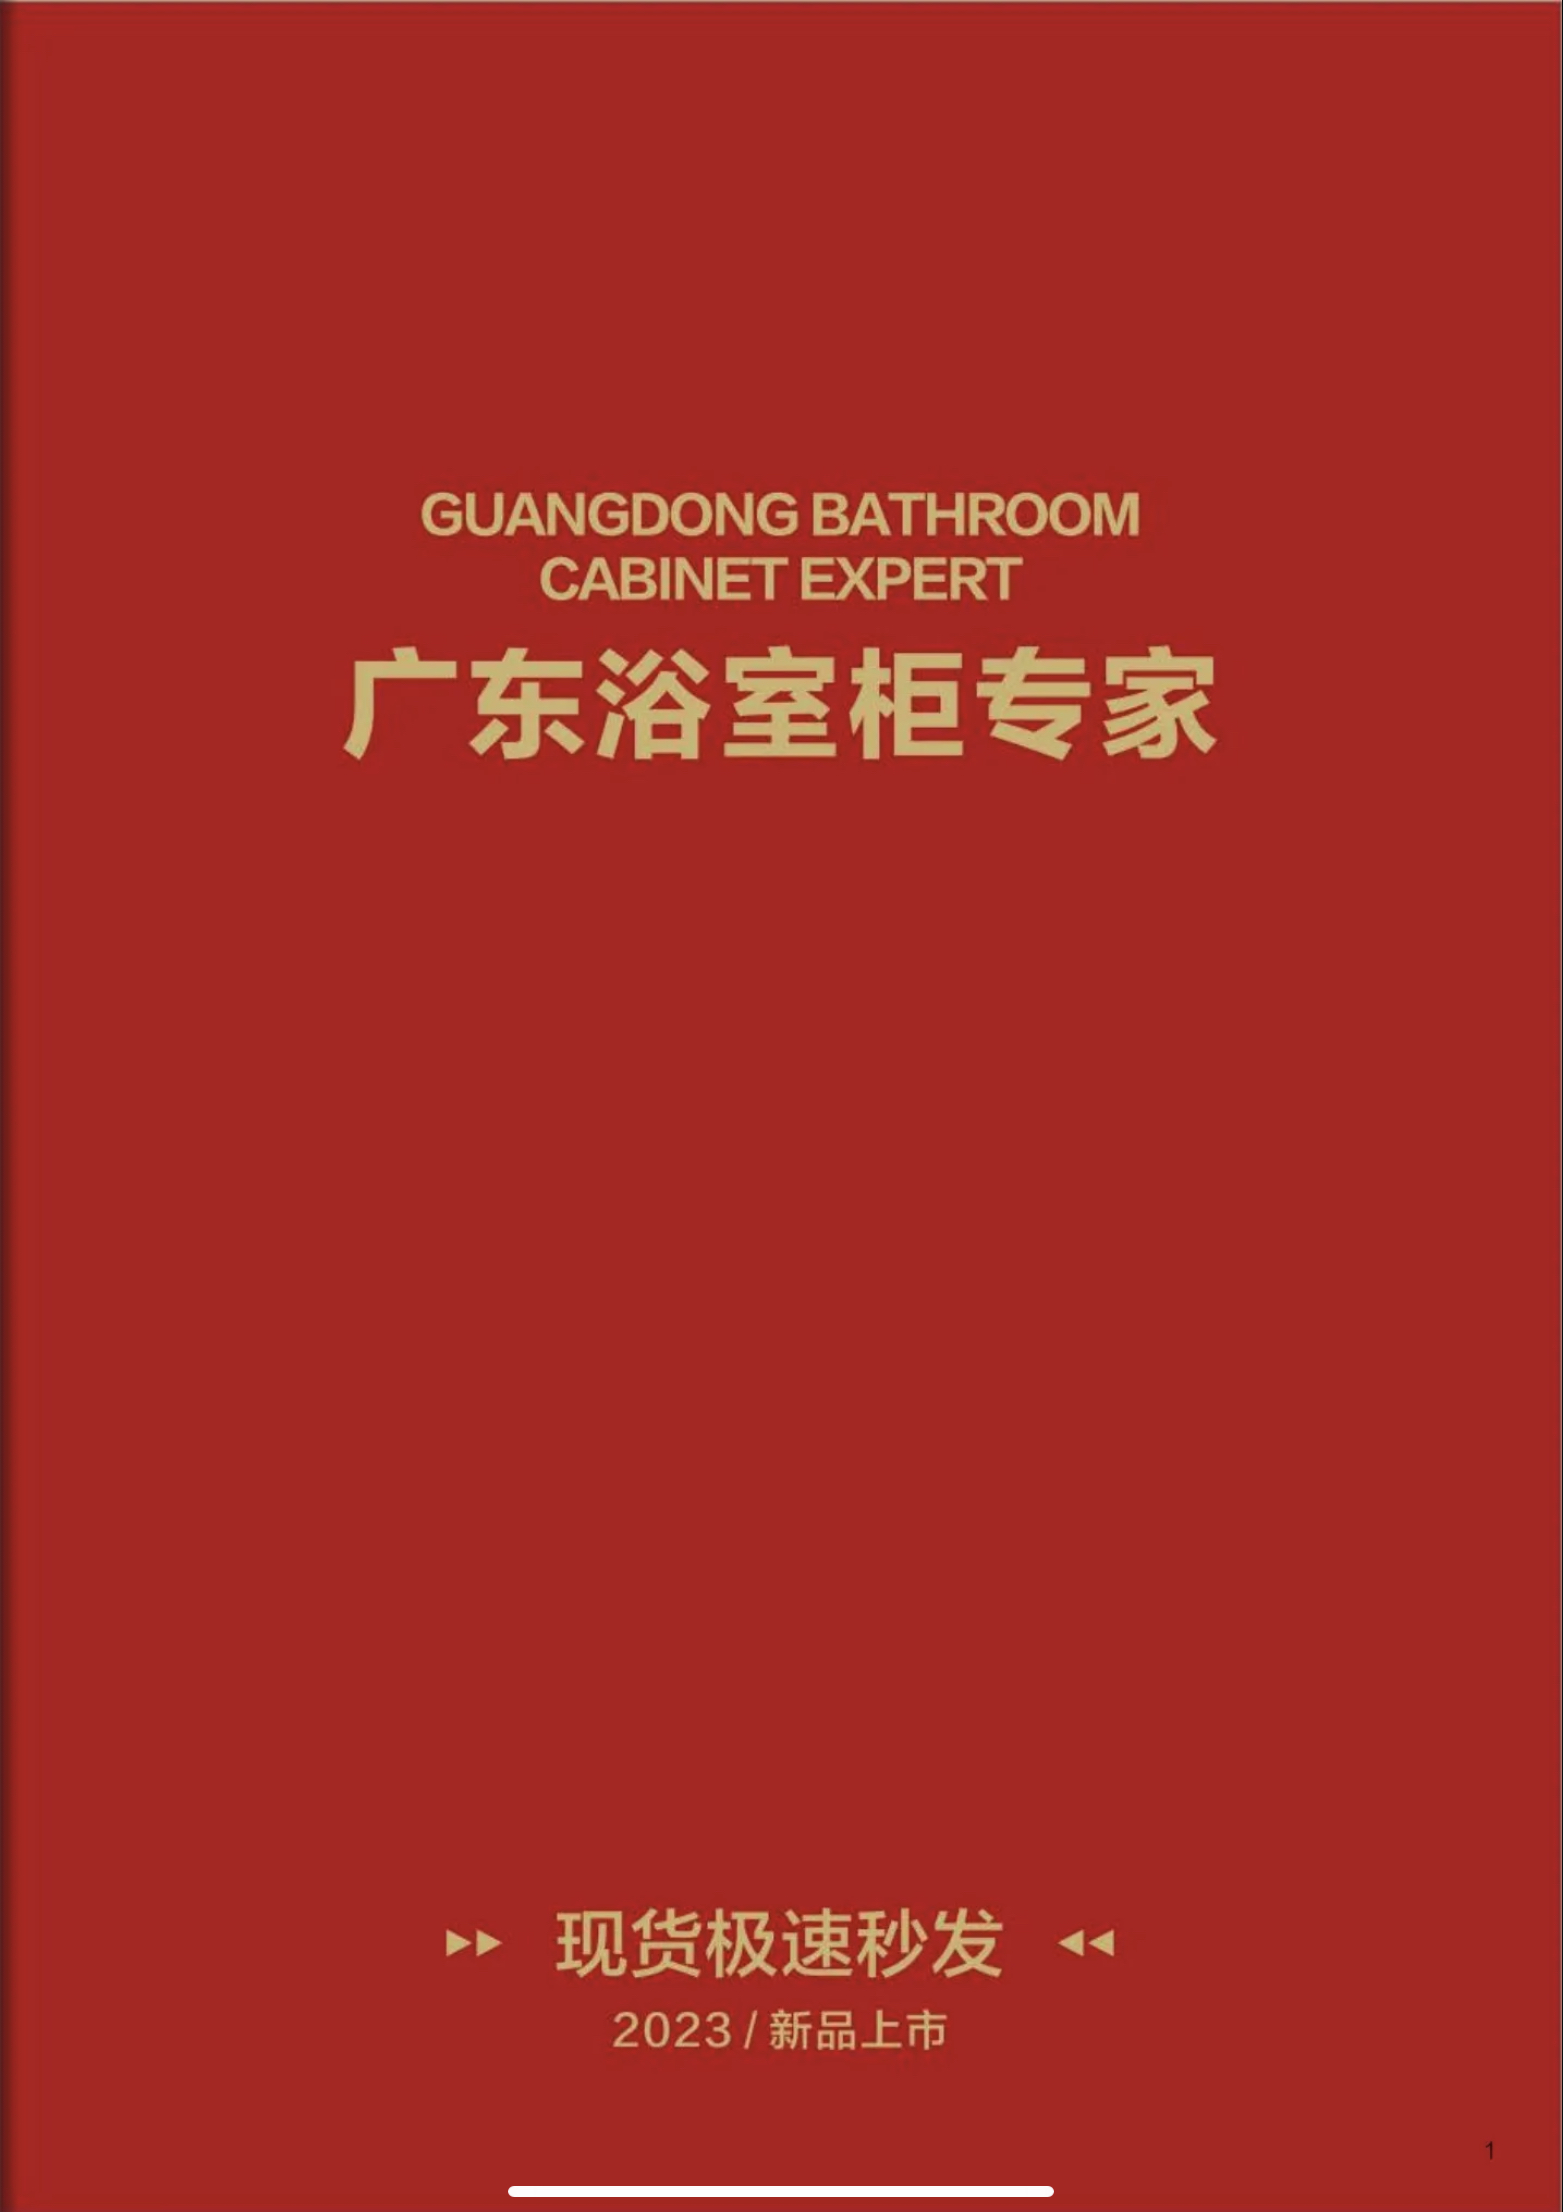 广东浴室柜专家